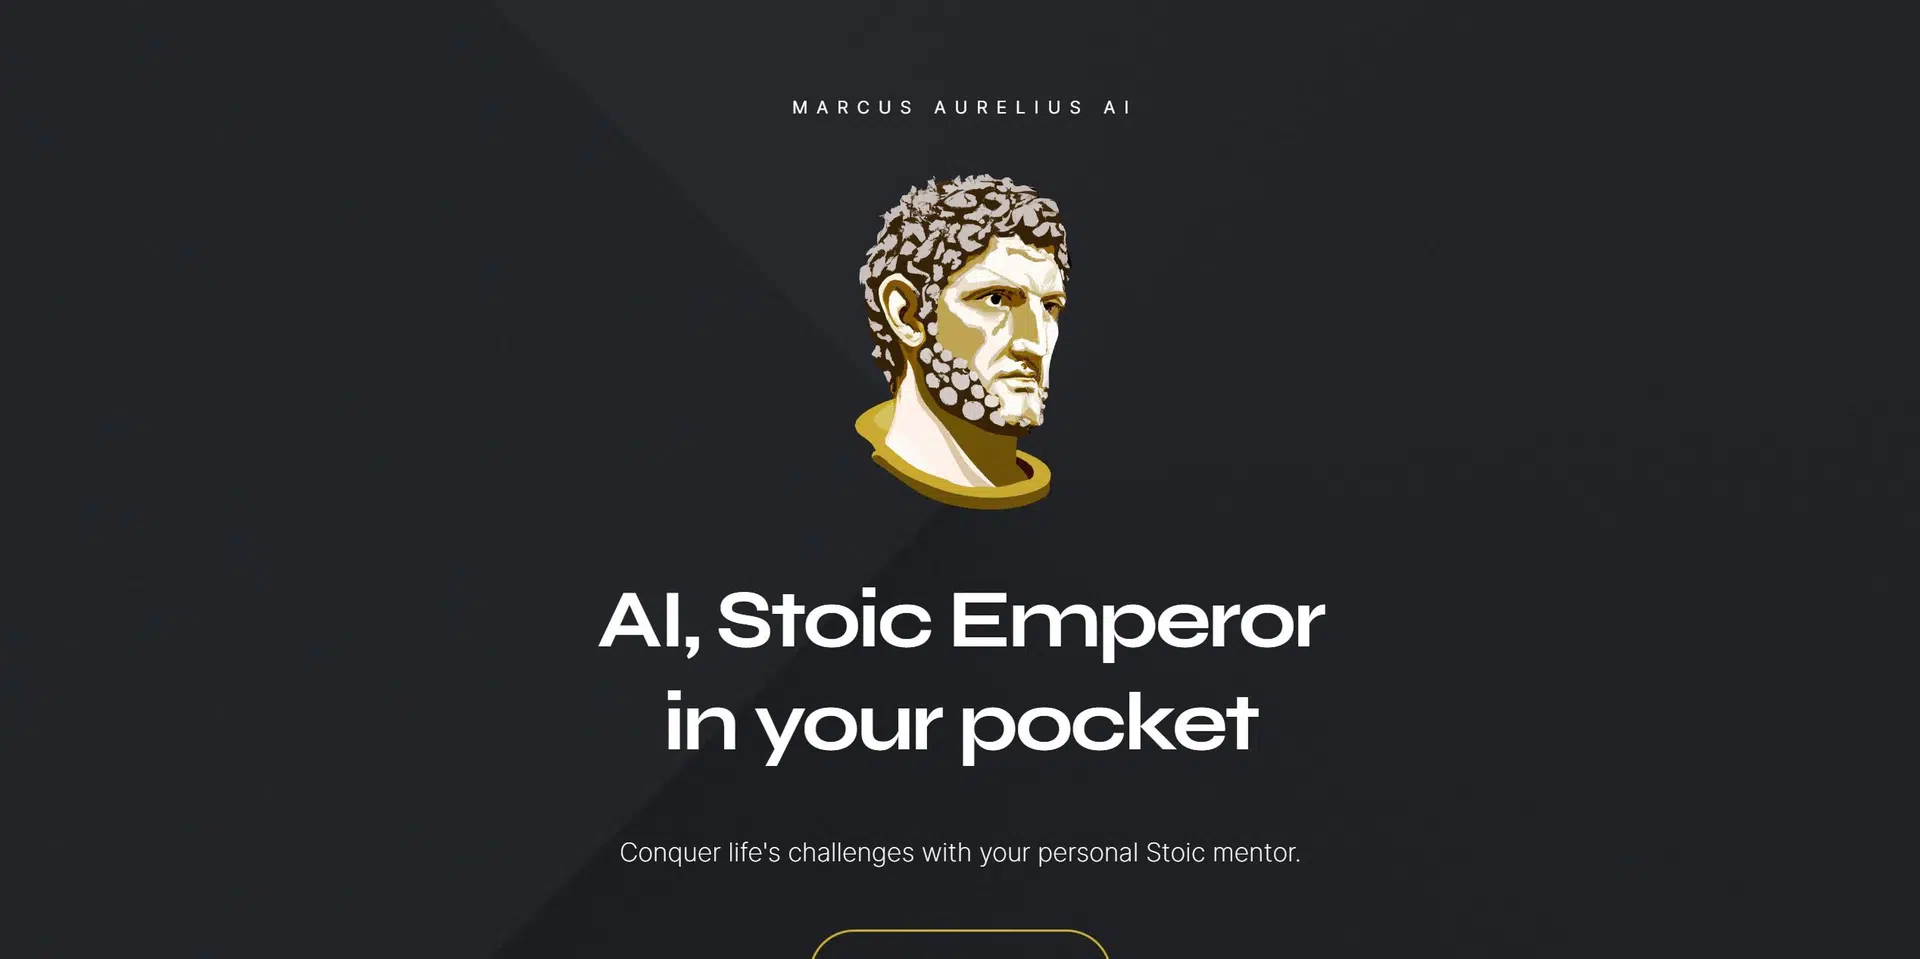 Marcus Aurelius AIwebsite picture